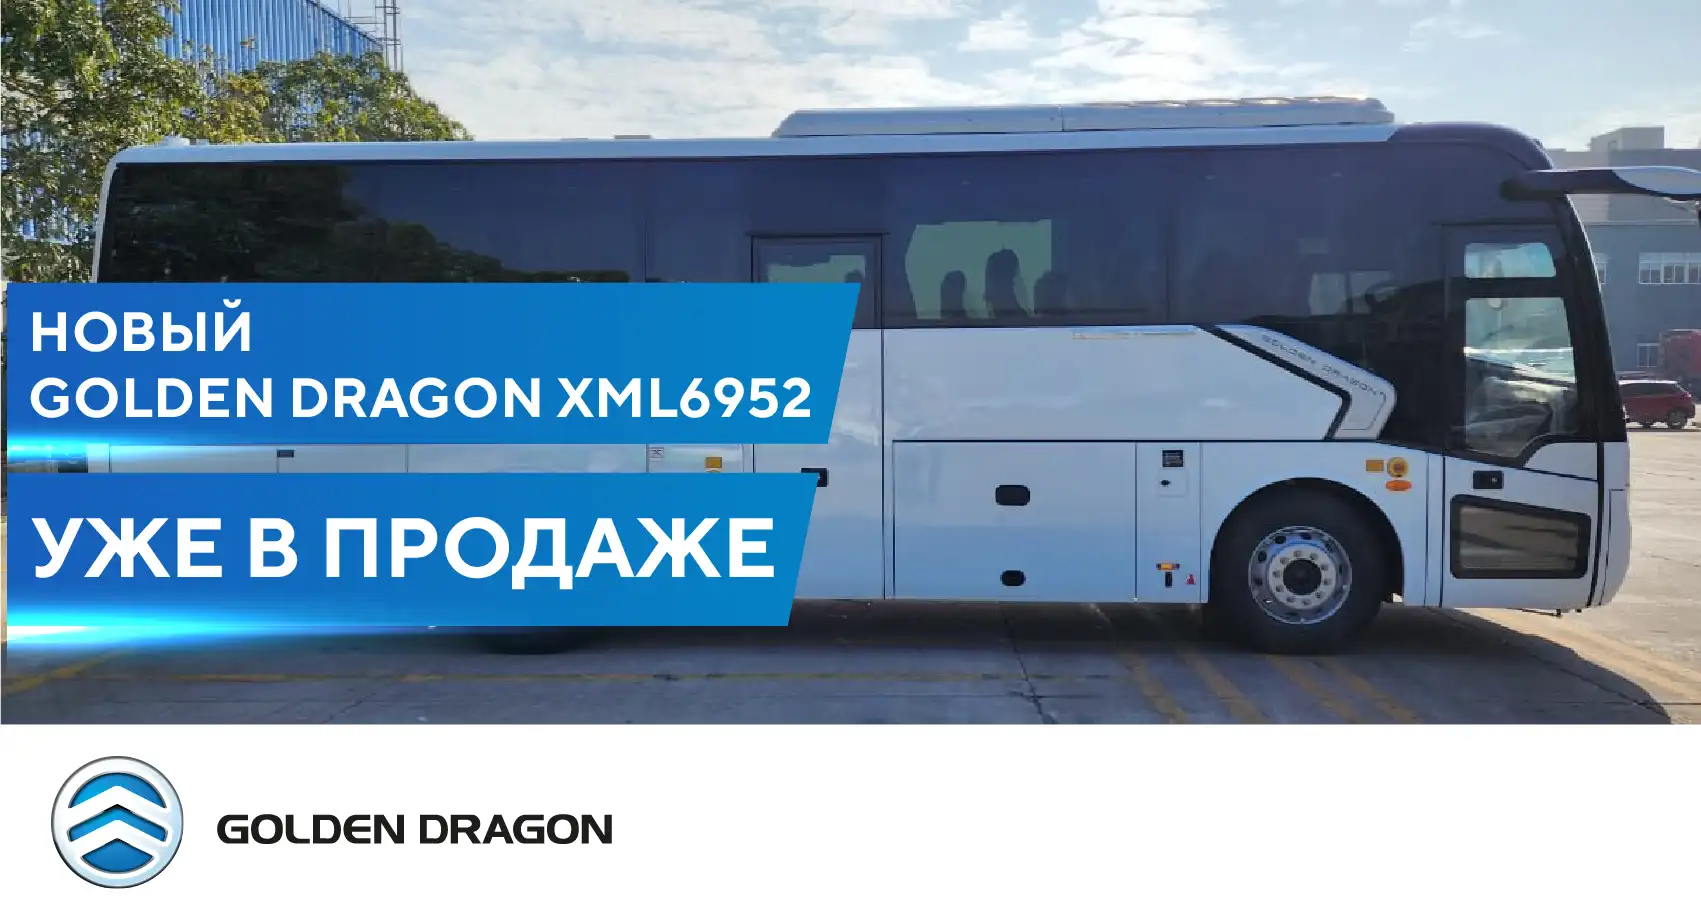 Новый туристический Golden Dragon XML6952 уже в продаже